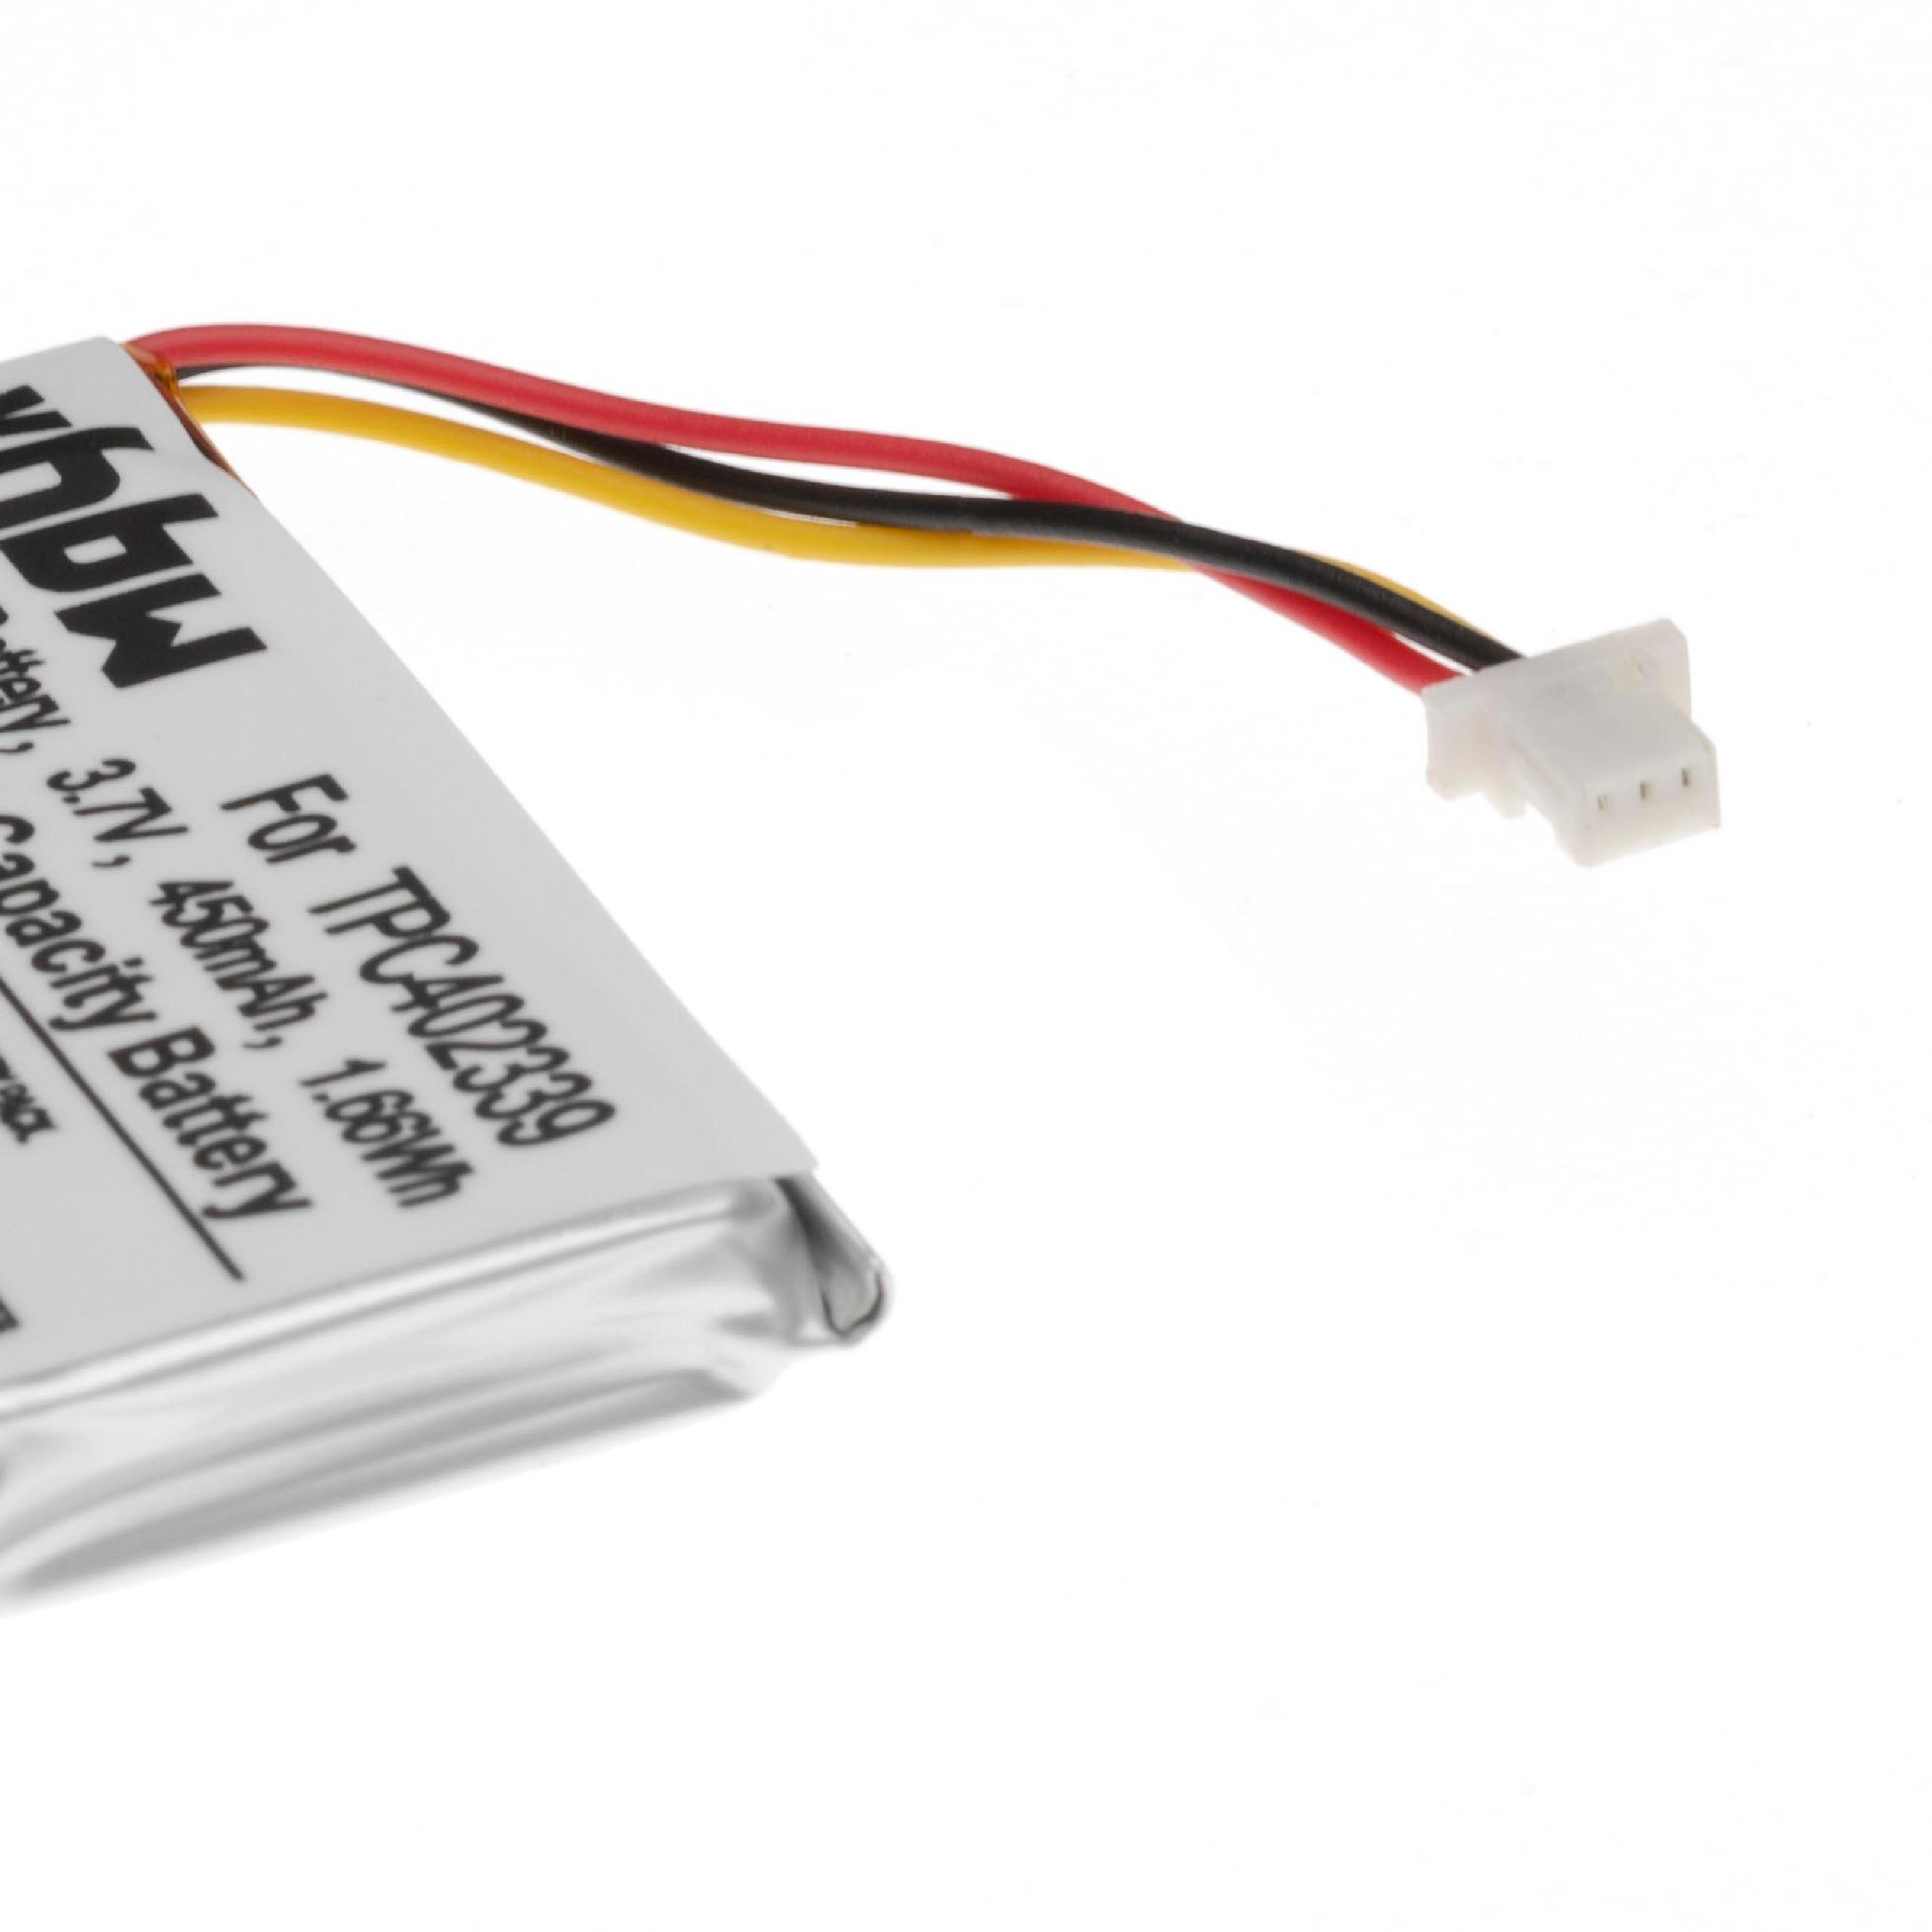 Batterie remplace Mio TPC402339 pour navigation GPS - 450mAh 3,7V Li-polymère